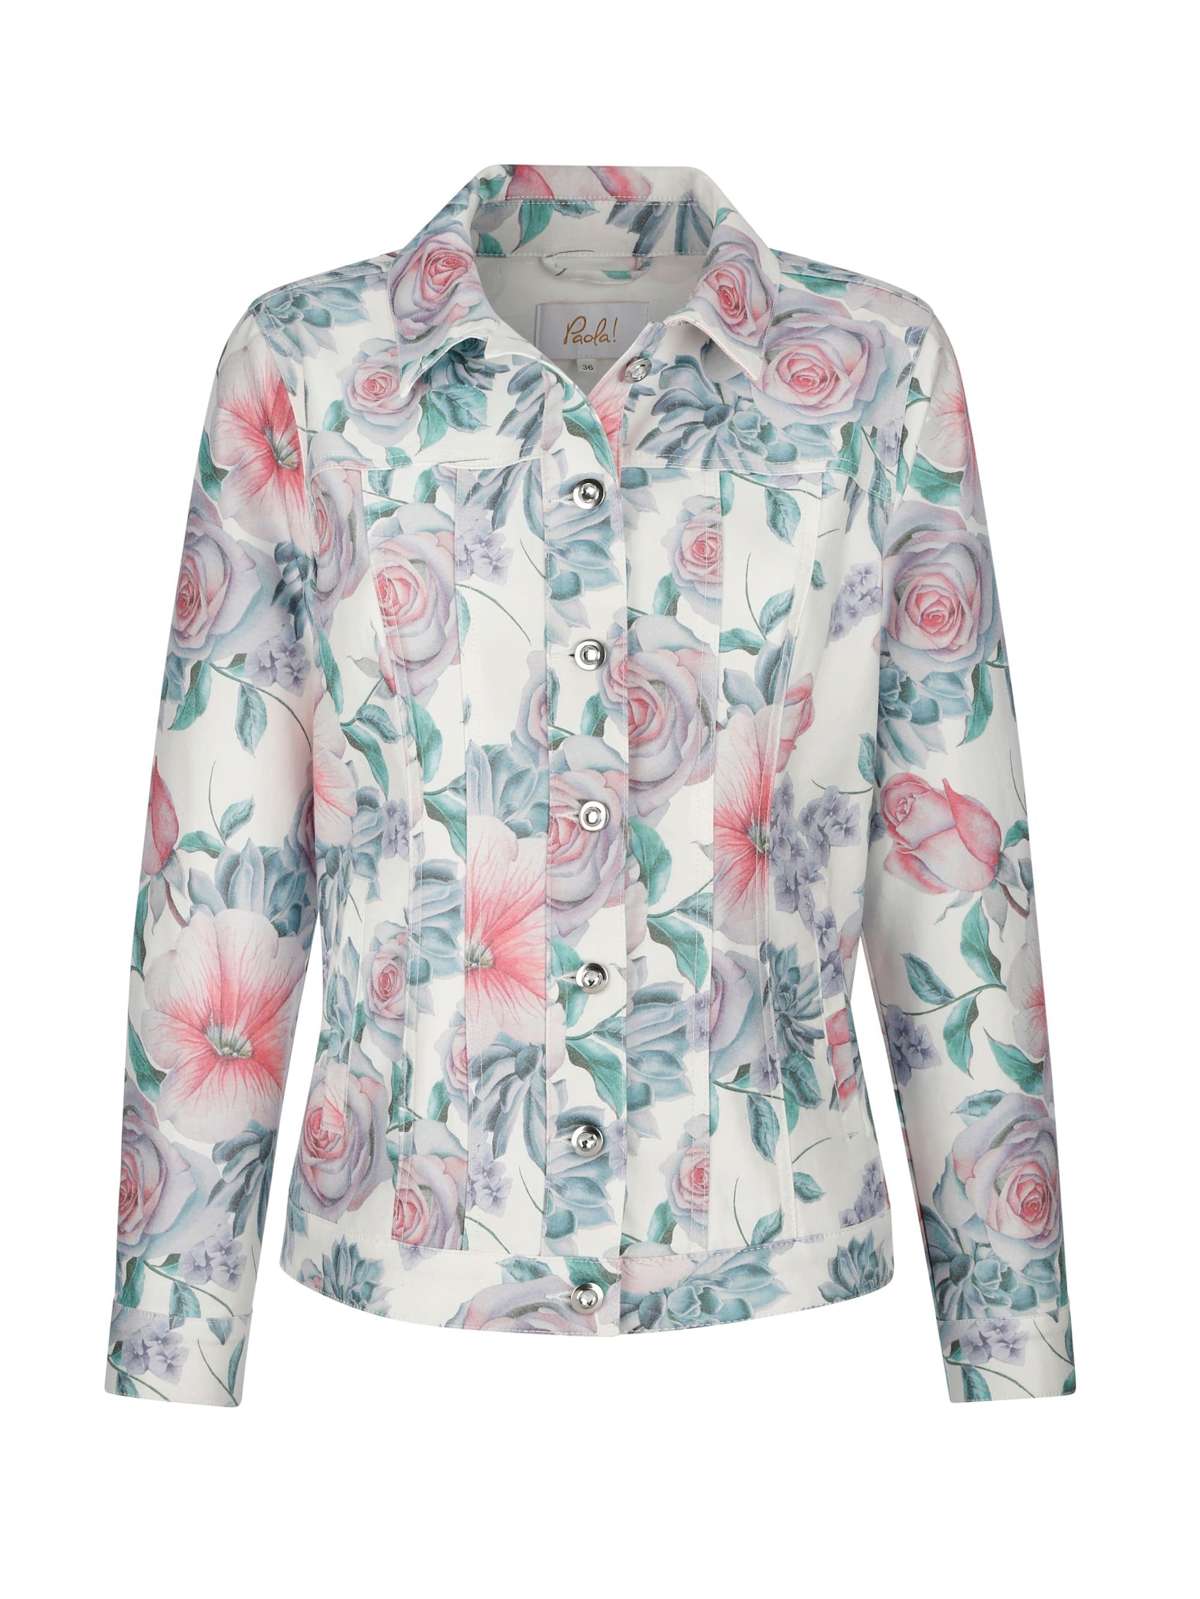 Джинсовая куртка-жакет с принтом роз